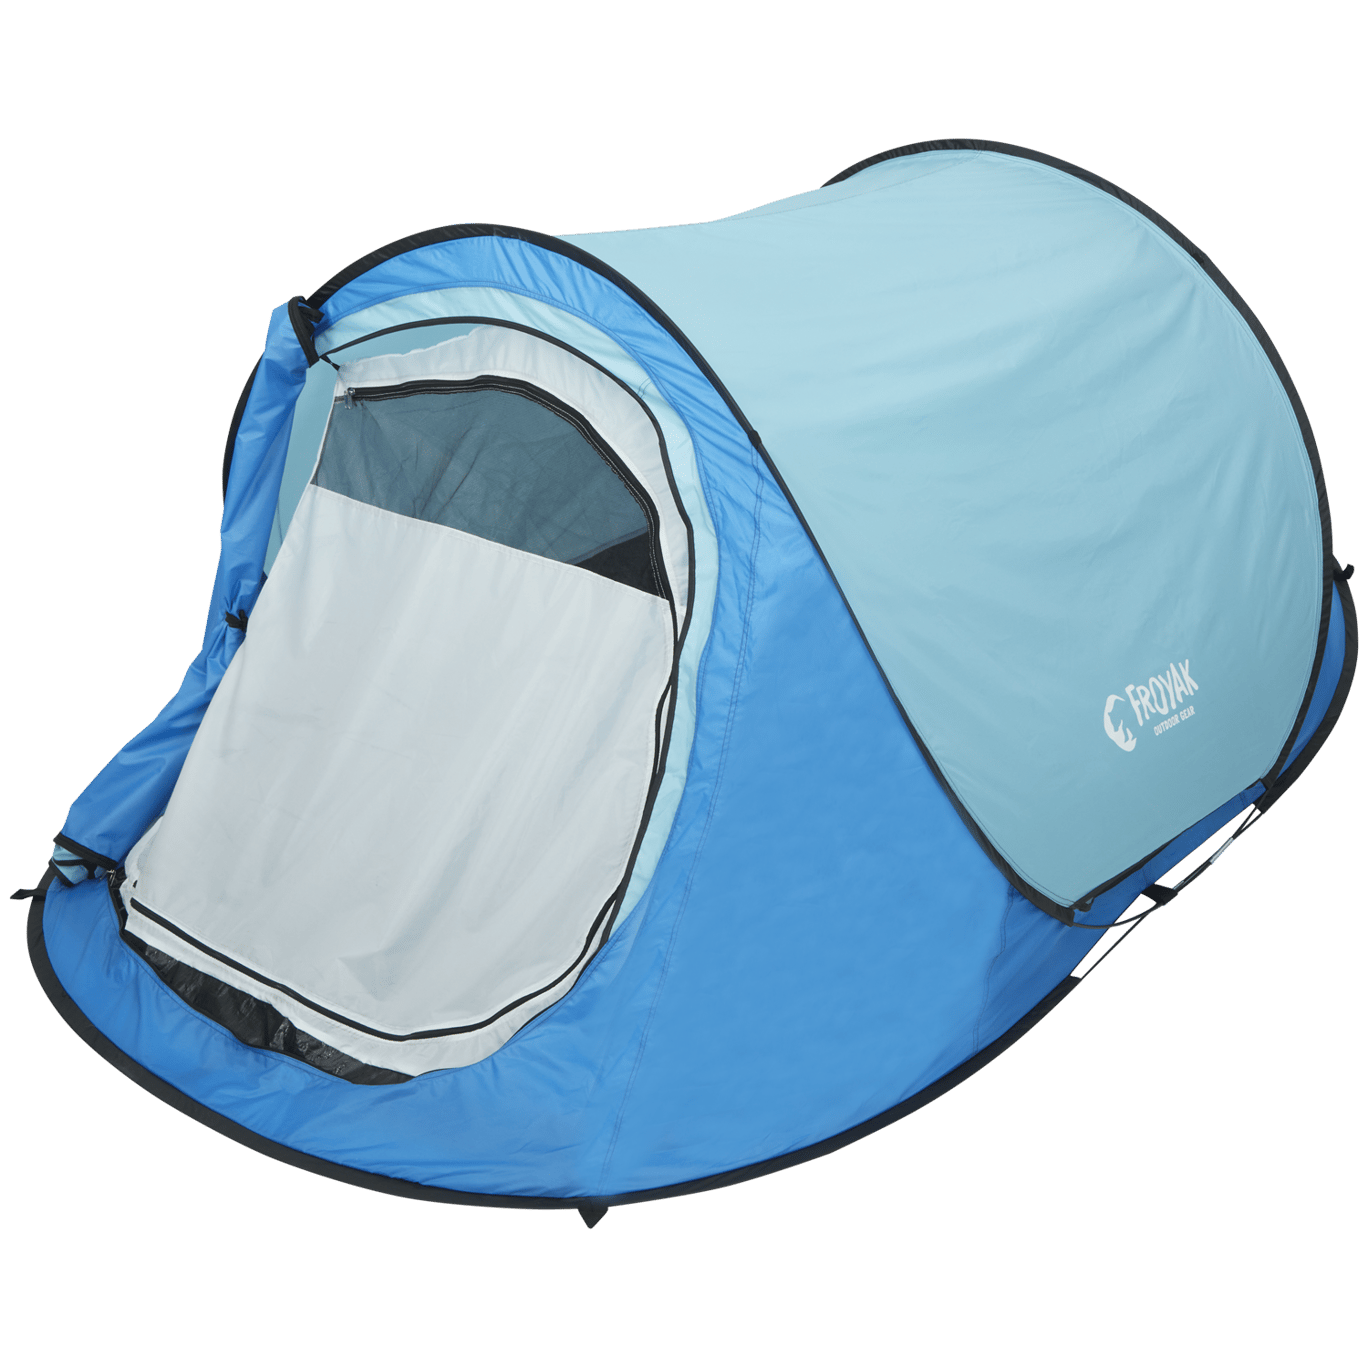 Shipley ondeugd Leer Goedkope tenten voor thuis of op vakantie | Action.com